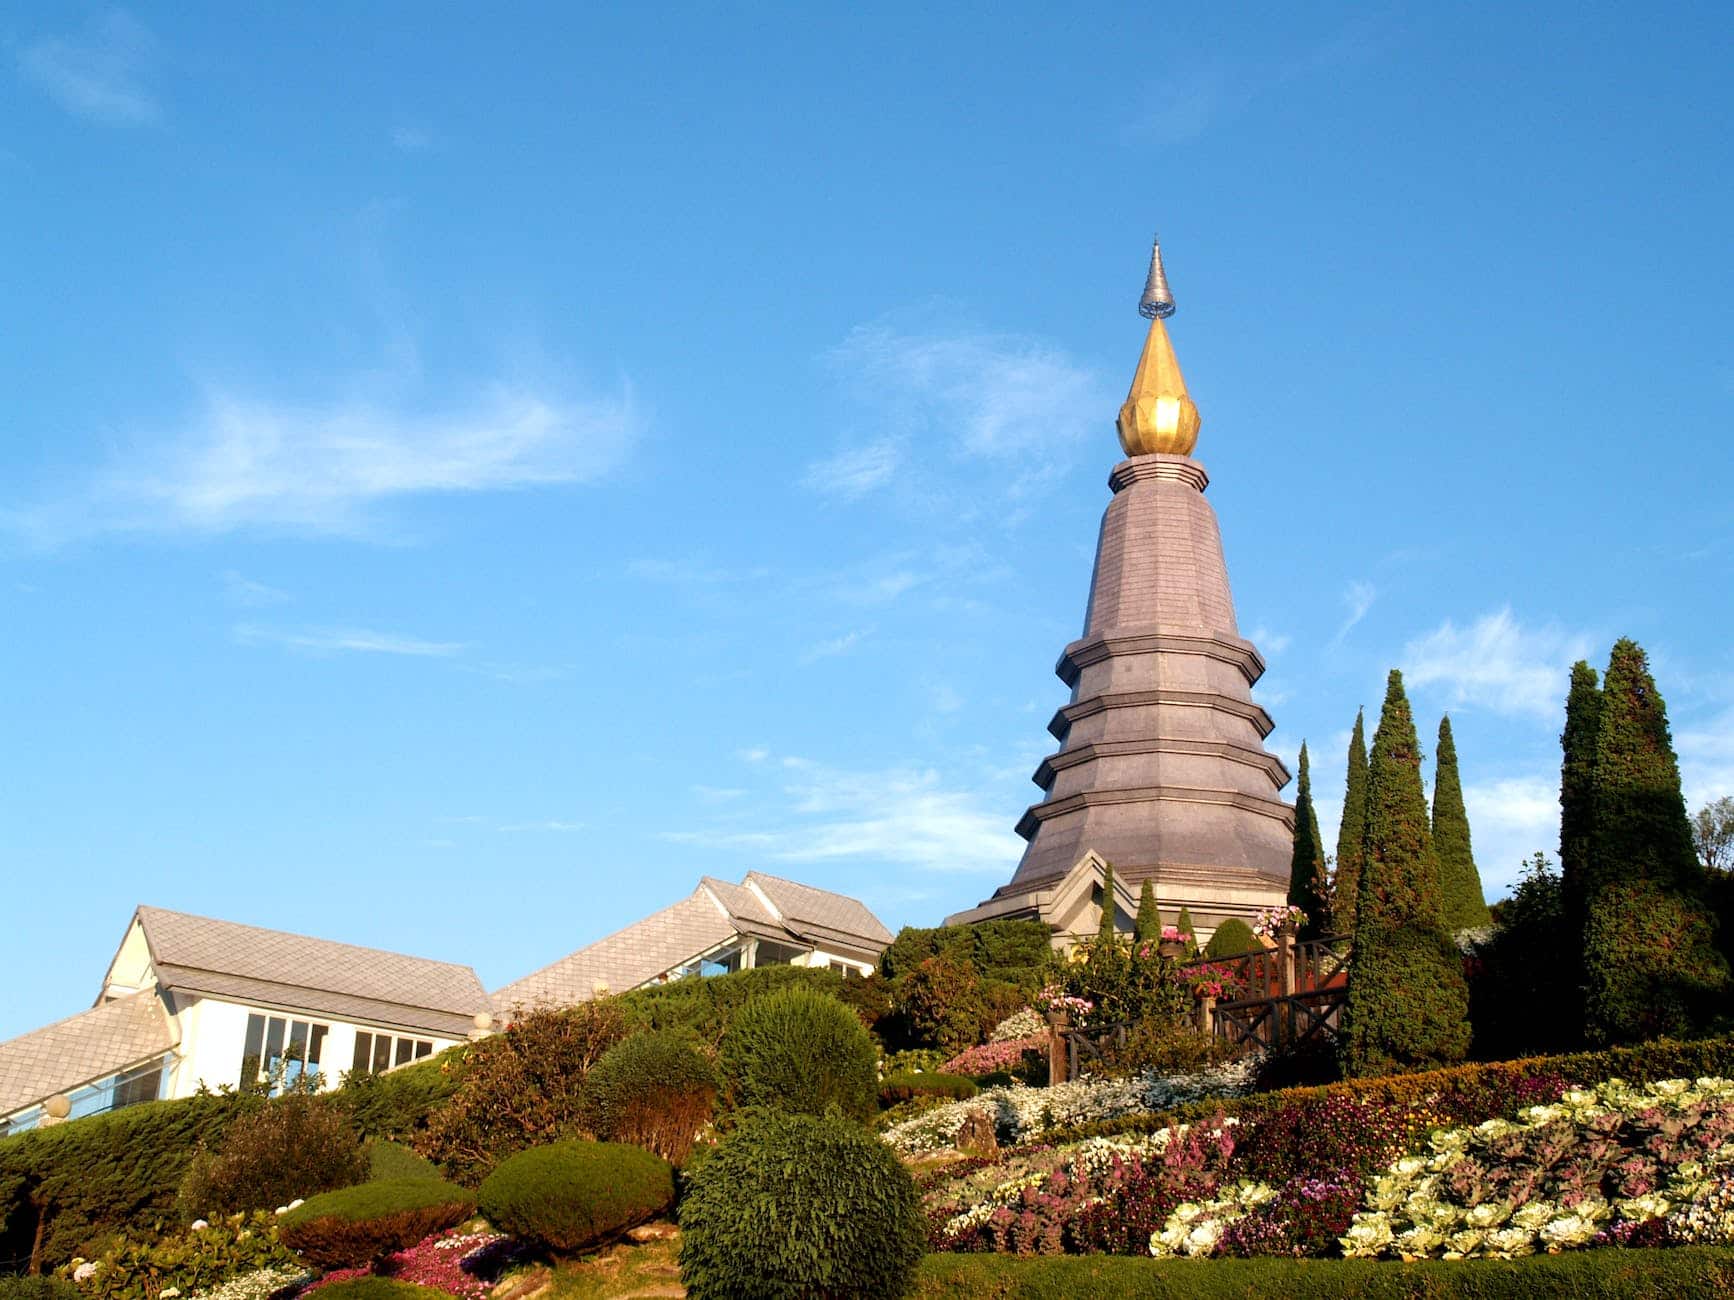 La Pagoda en la cima del Parque Nacional Doi Inthanon la visitamos en este tour.